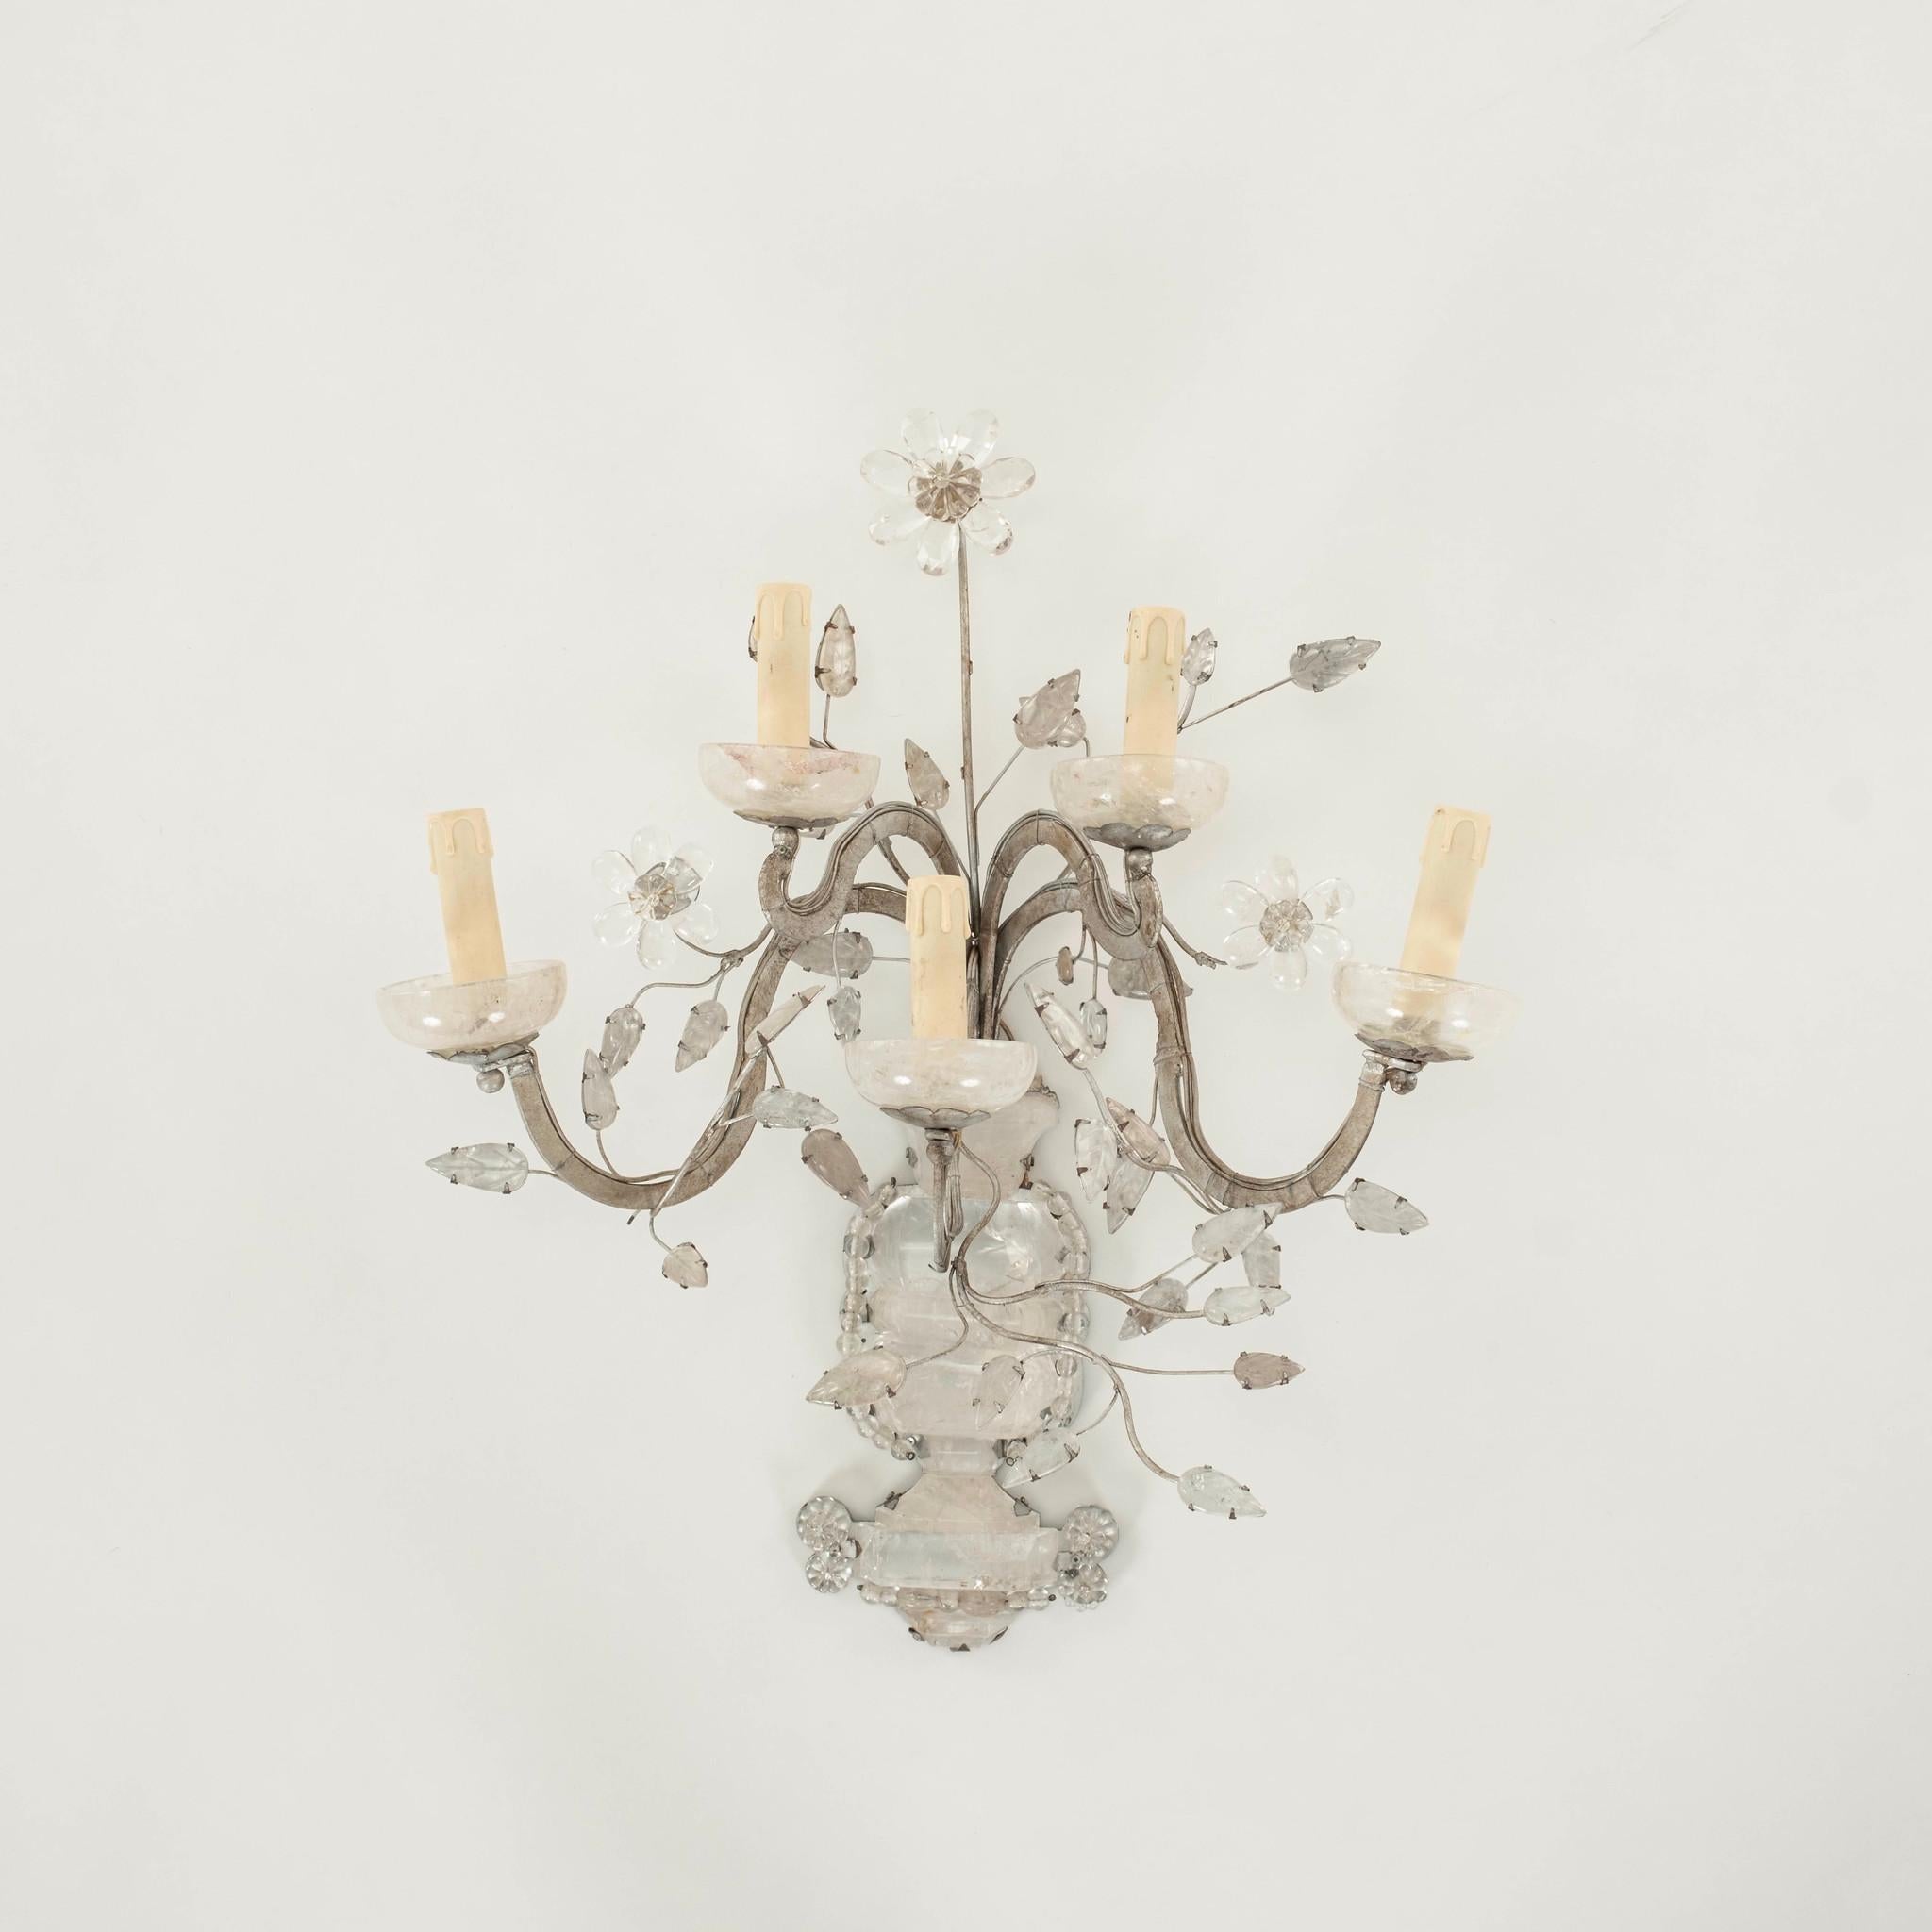 Paire de lampes à cinq bras de style Maison Baguès du 20e siècle,  appliques en forme de candélabre en argent doré, avec des bases en cristal de roche massif et un feuillage orné de fleurs en cristal.